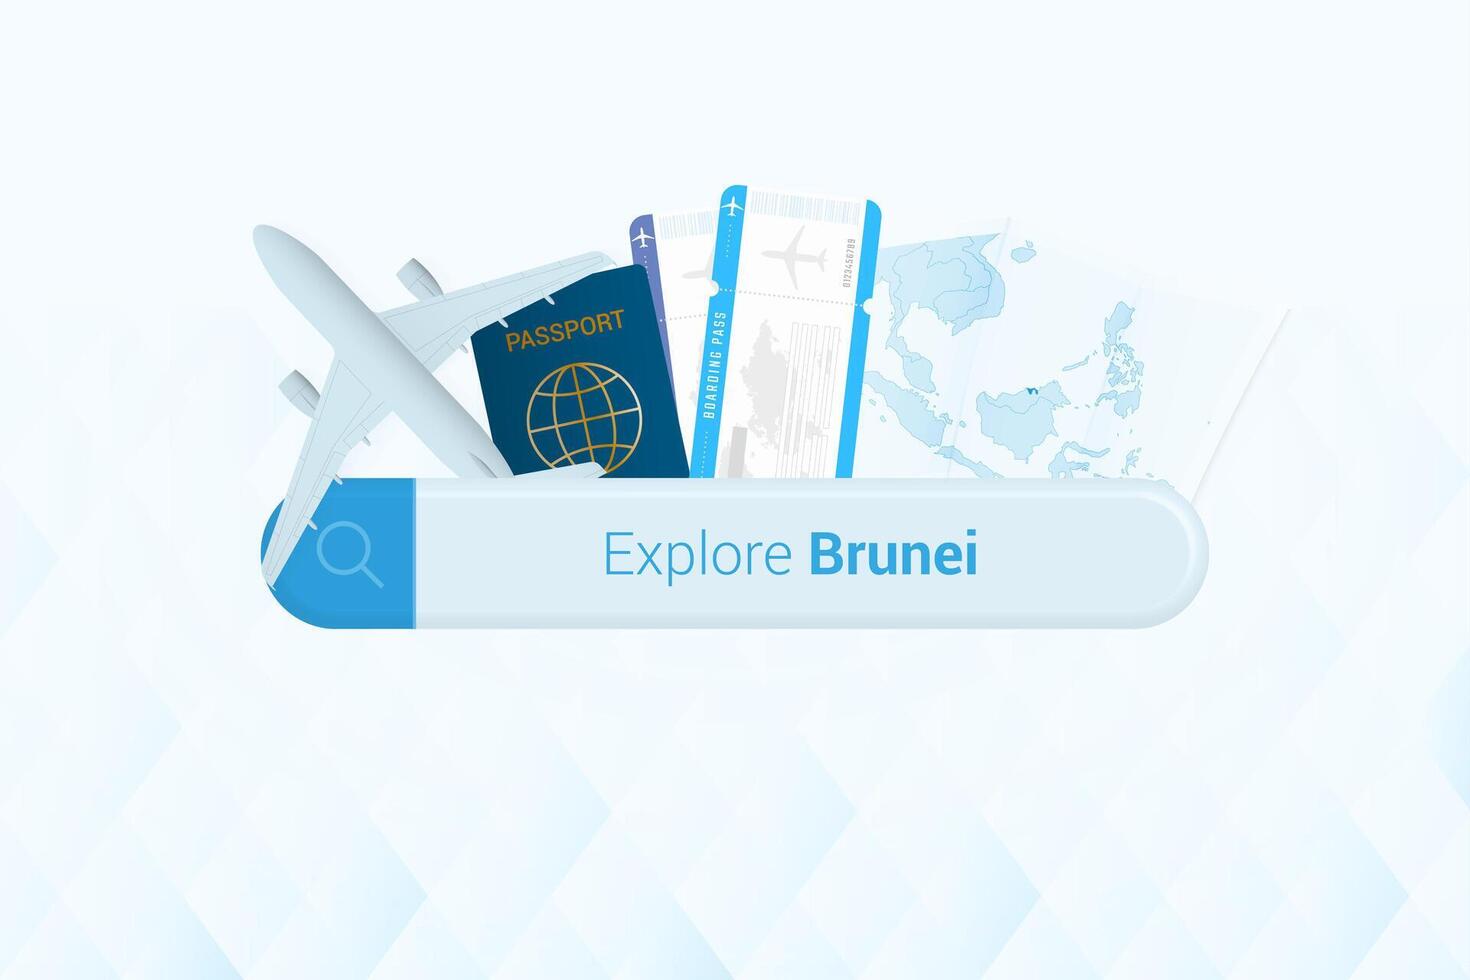 recherche des billets à brunei ou Voyage destination dans brunei. recherche bar avec avion, passeport, embarquement passer, des billets et carte. vecteur